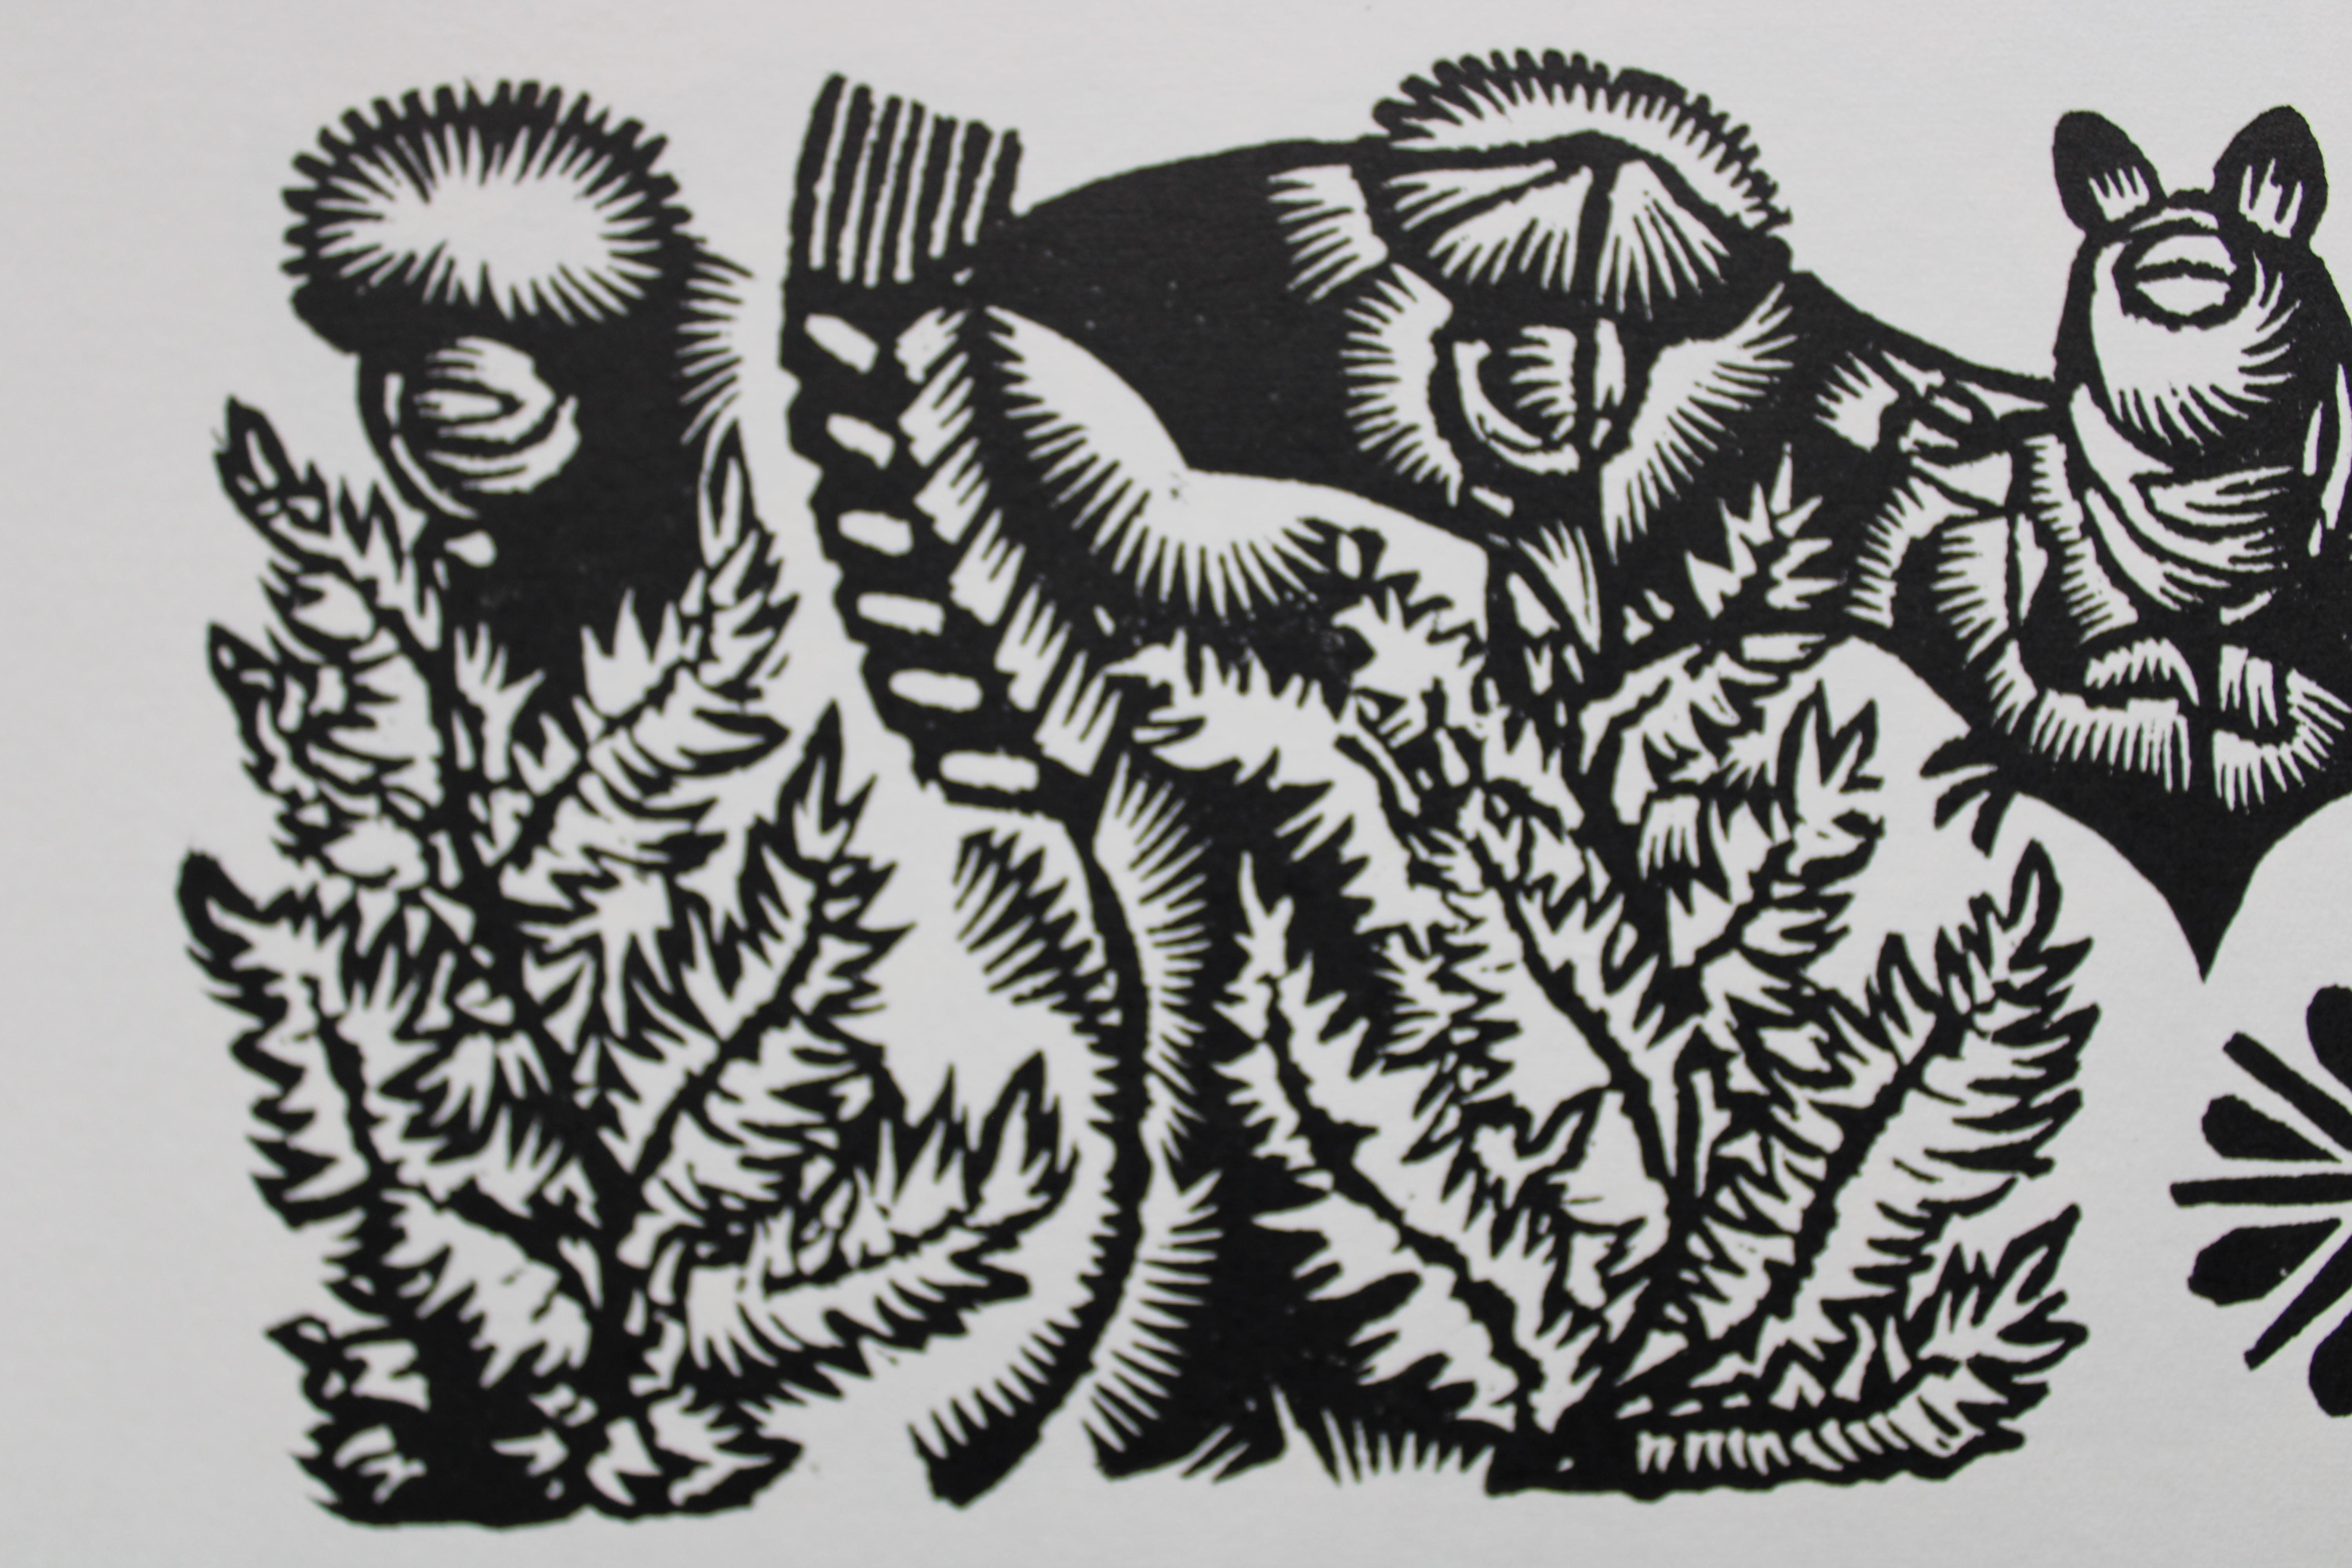 Bat in the meadow. 1982. Paper, linocut, 20x34 cm - Folk Art Print by Dainis Rozkalns